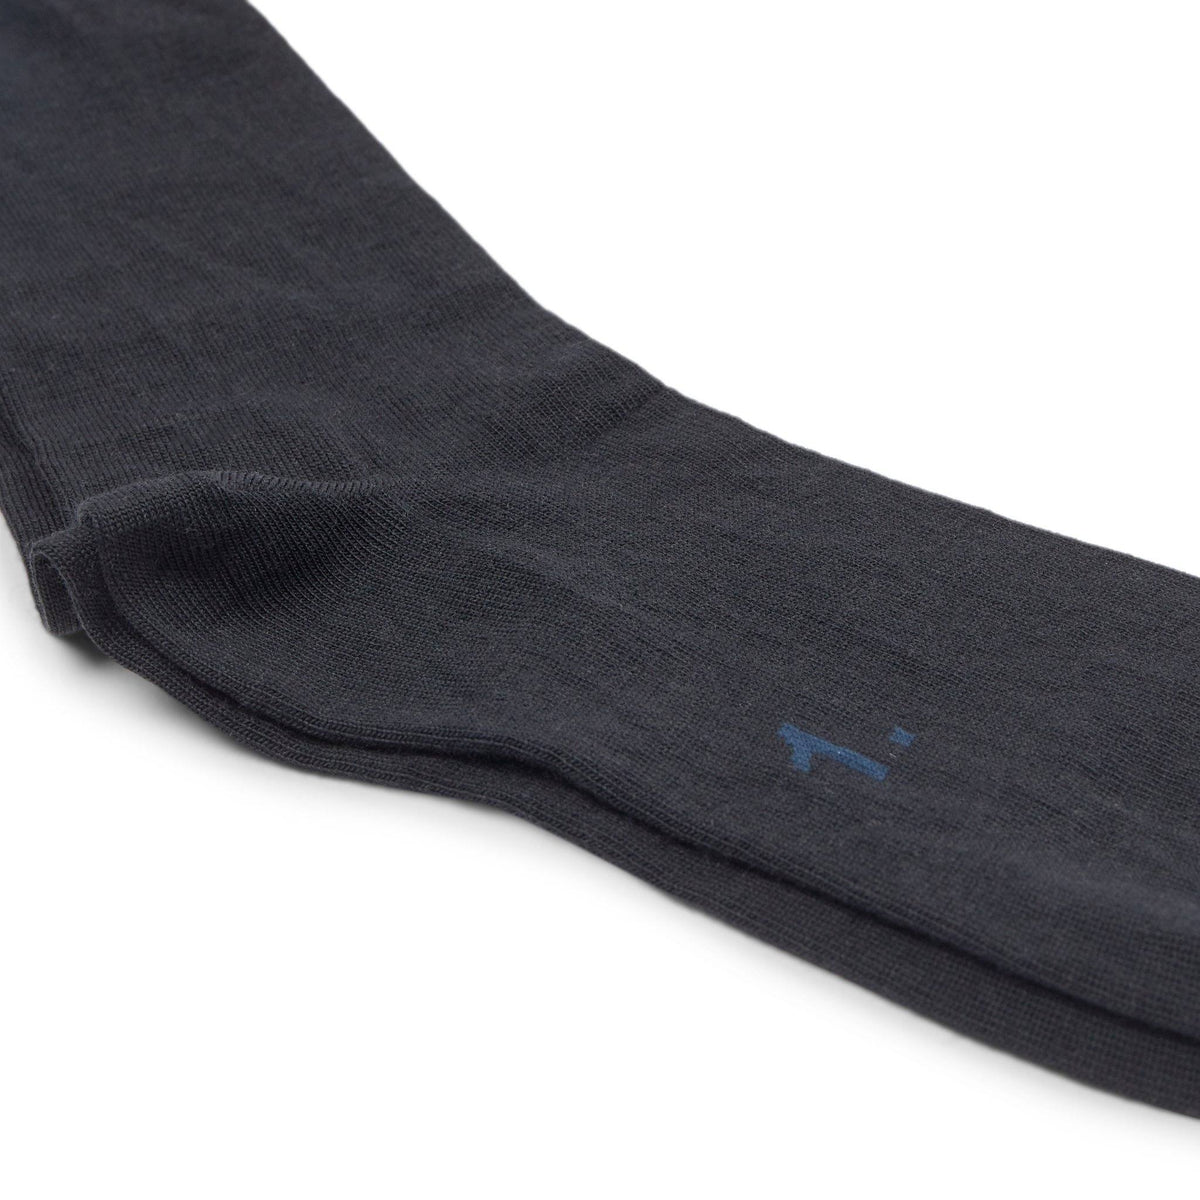 10socks – Mørkeblå sokker – 10Socks sokker – Sumisura